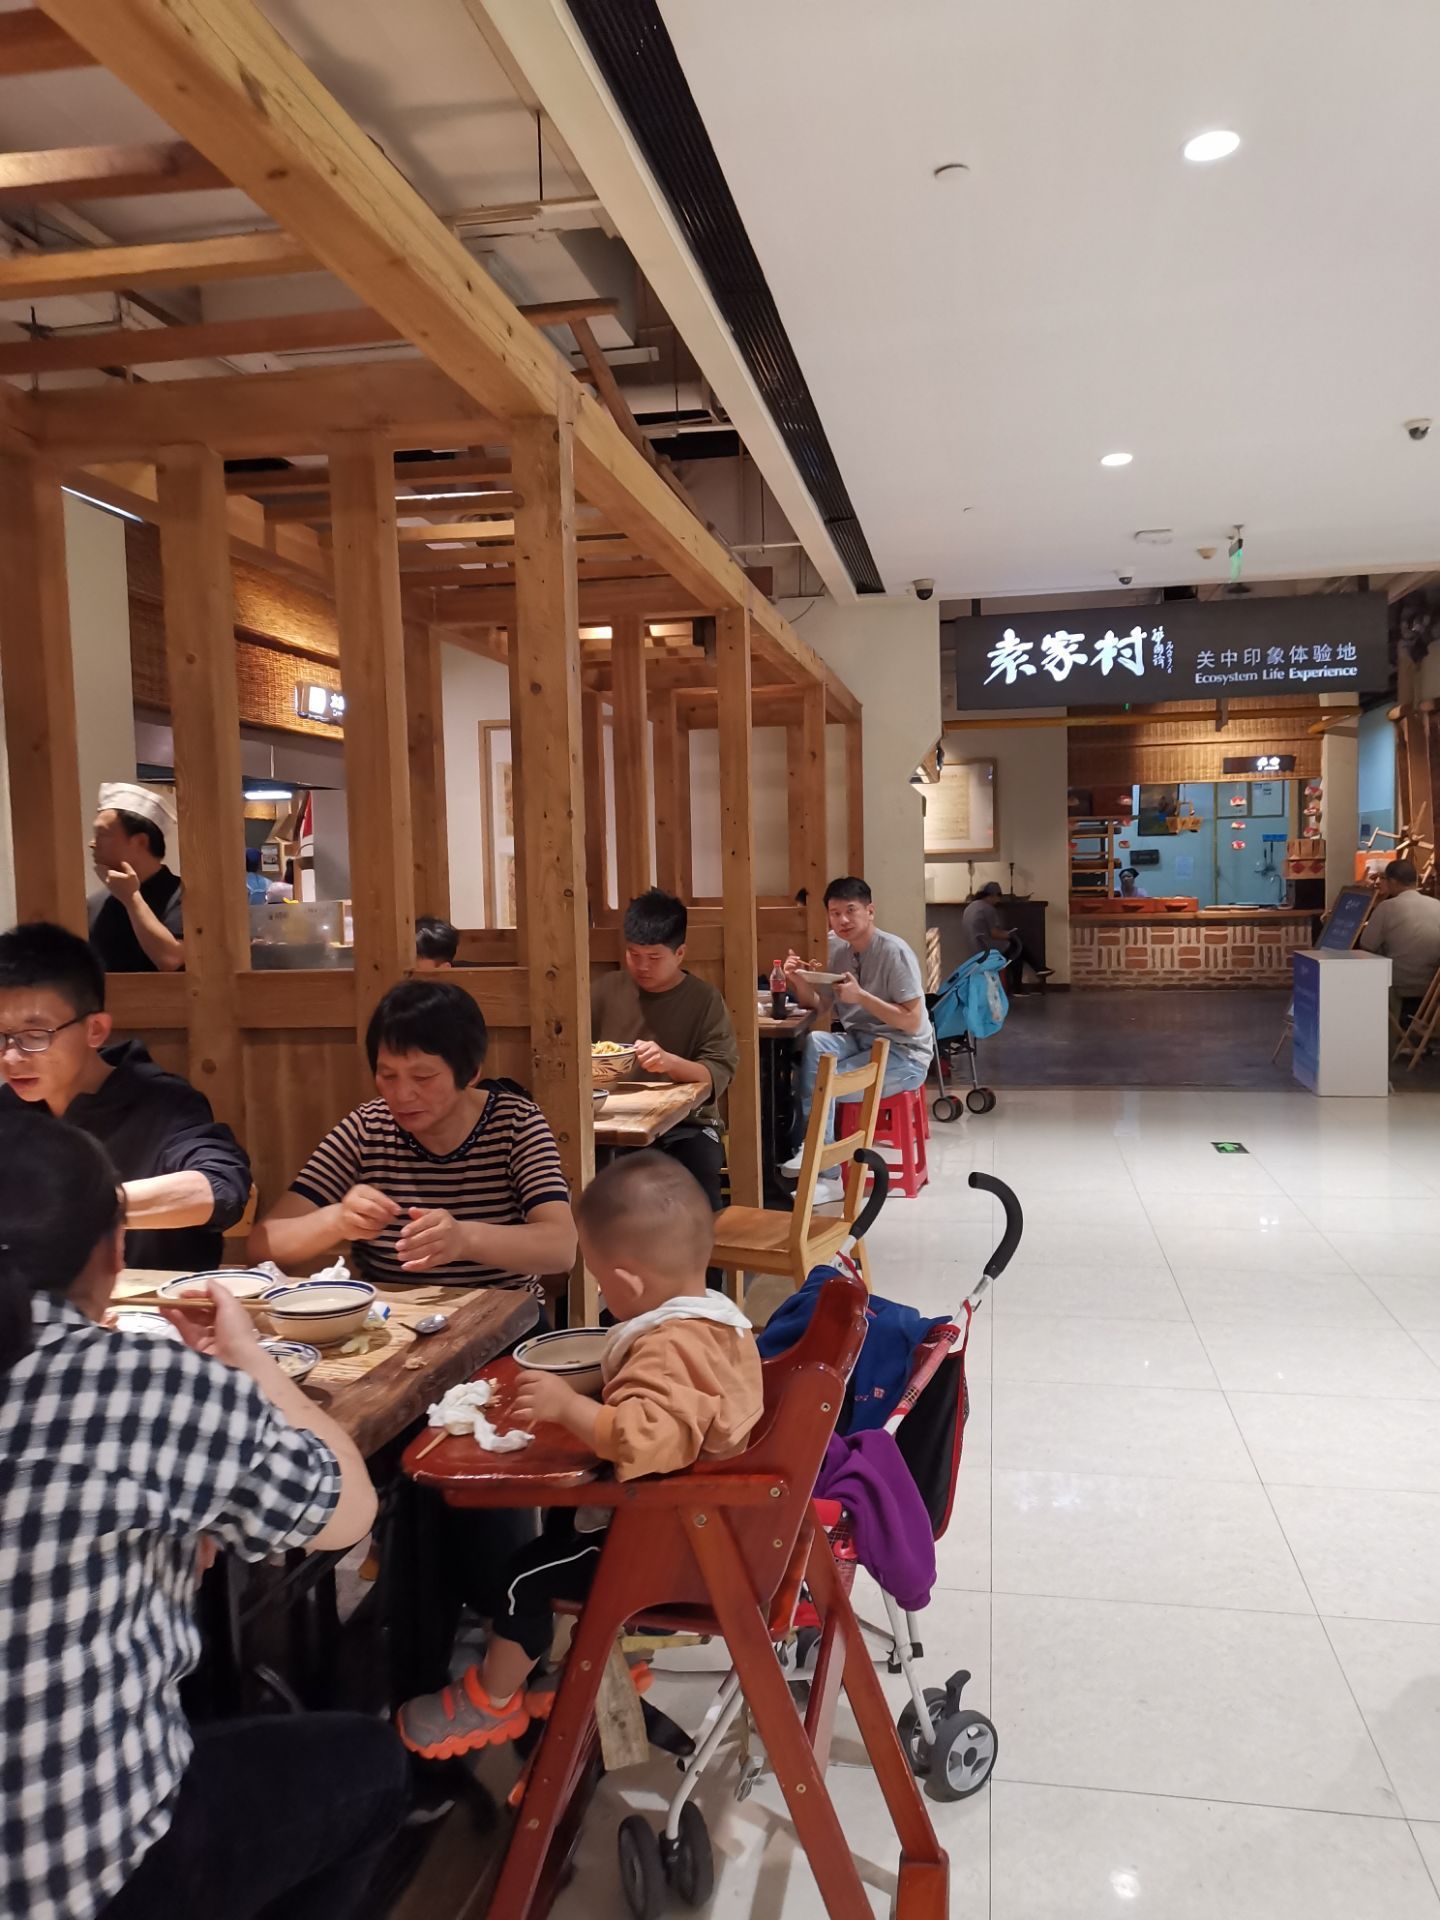 西安的袁家村小吃城有很多店,这个是在银泰城三楼的一家,有很多小吃